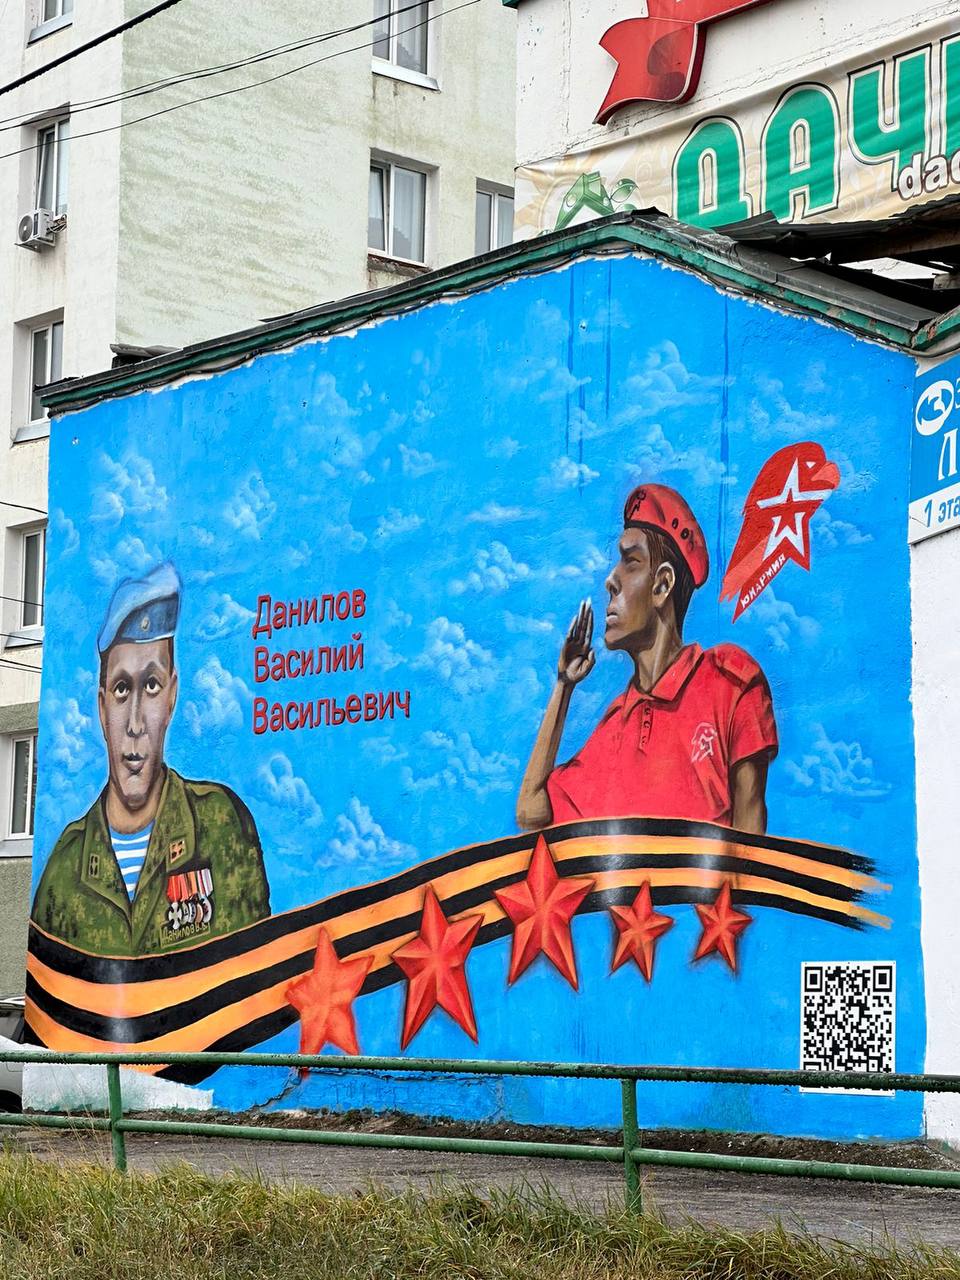 «Василий был очень светлым». Нижегородский художник нарисовал патриотический мурал в Якутске